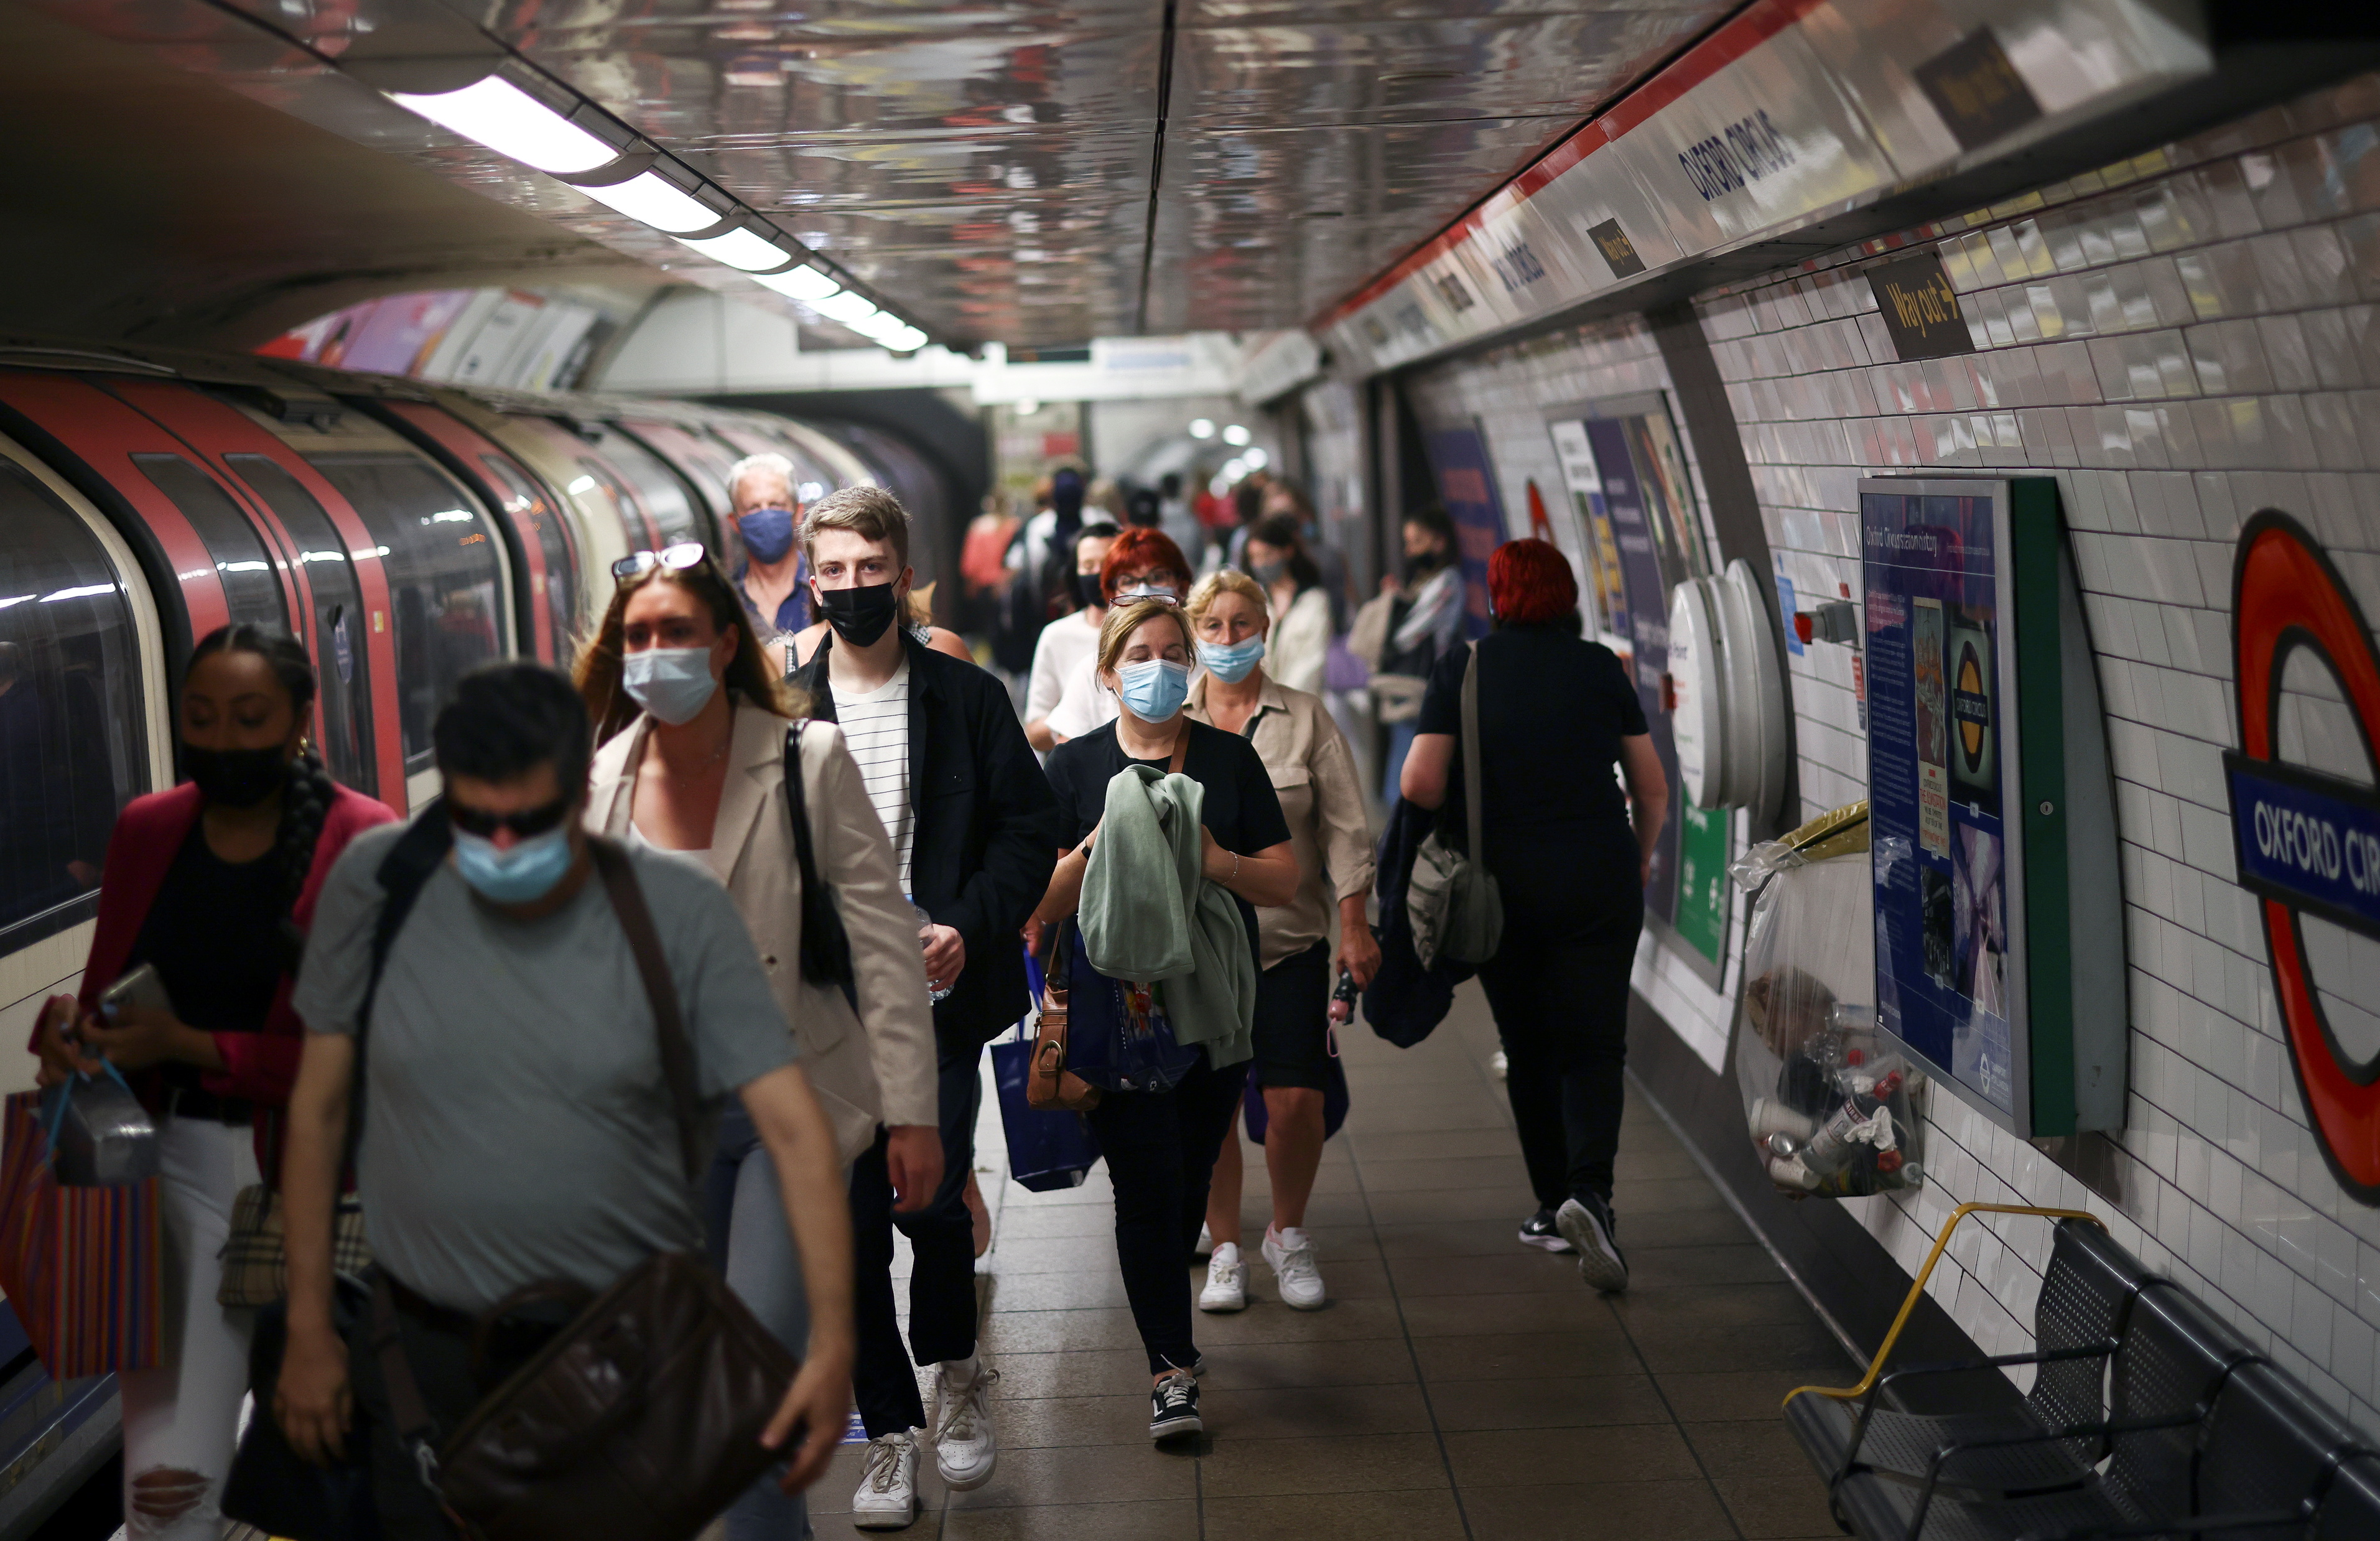 La estación de metro de Oxford Circus, en medio de la pandemia de la enfermedad del coronavirus (COVID-19), en Londres, Gran Bretaña (REUTERS/Henry Nicholls)